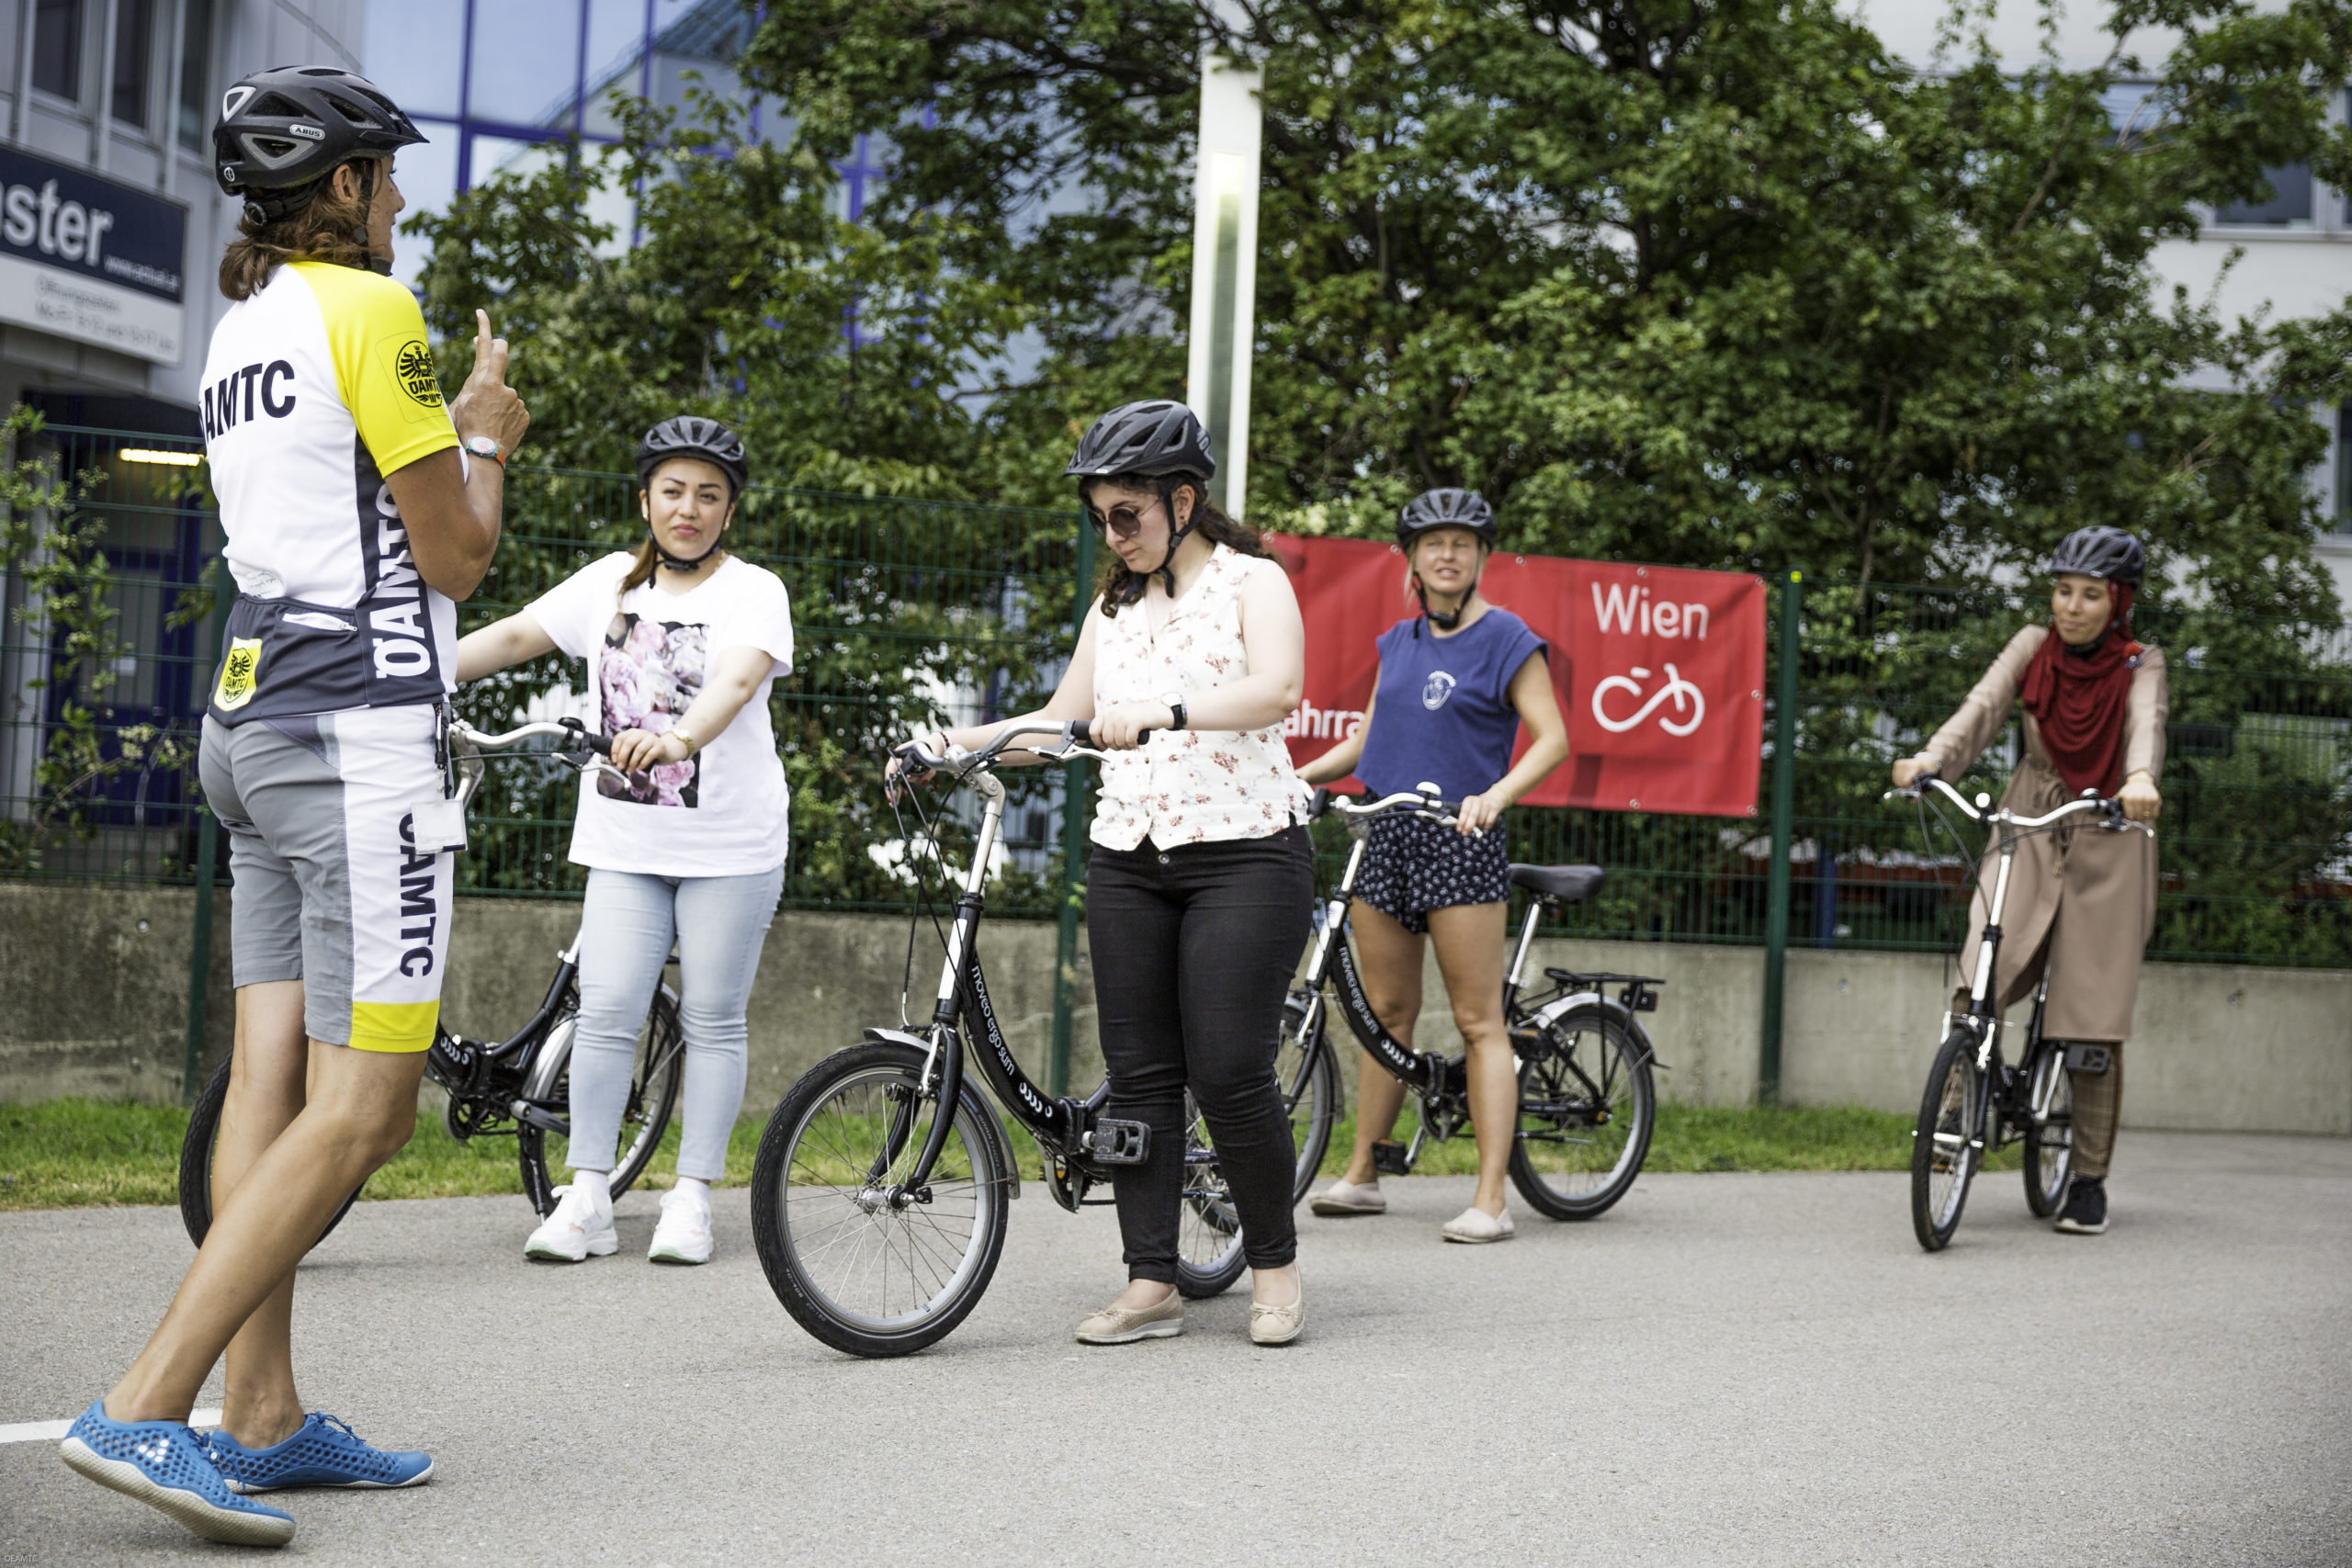 Mehrere Frauen stehen mit ihren Fahrrädern auf dem Übungsplatz. Radlehrerin Daniela steht vor ihnen und erklärt etwas